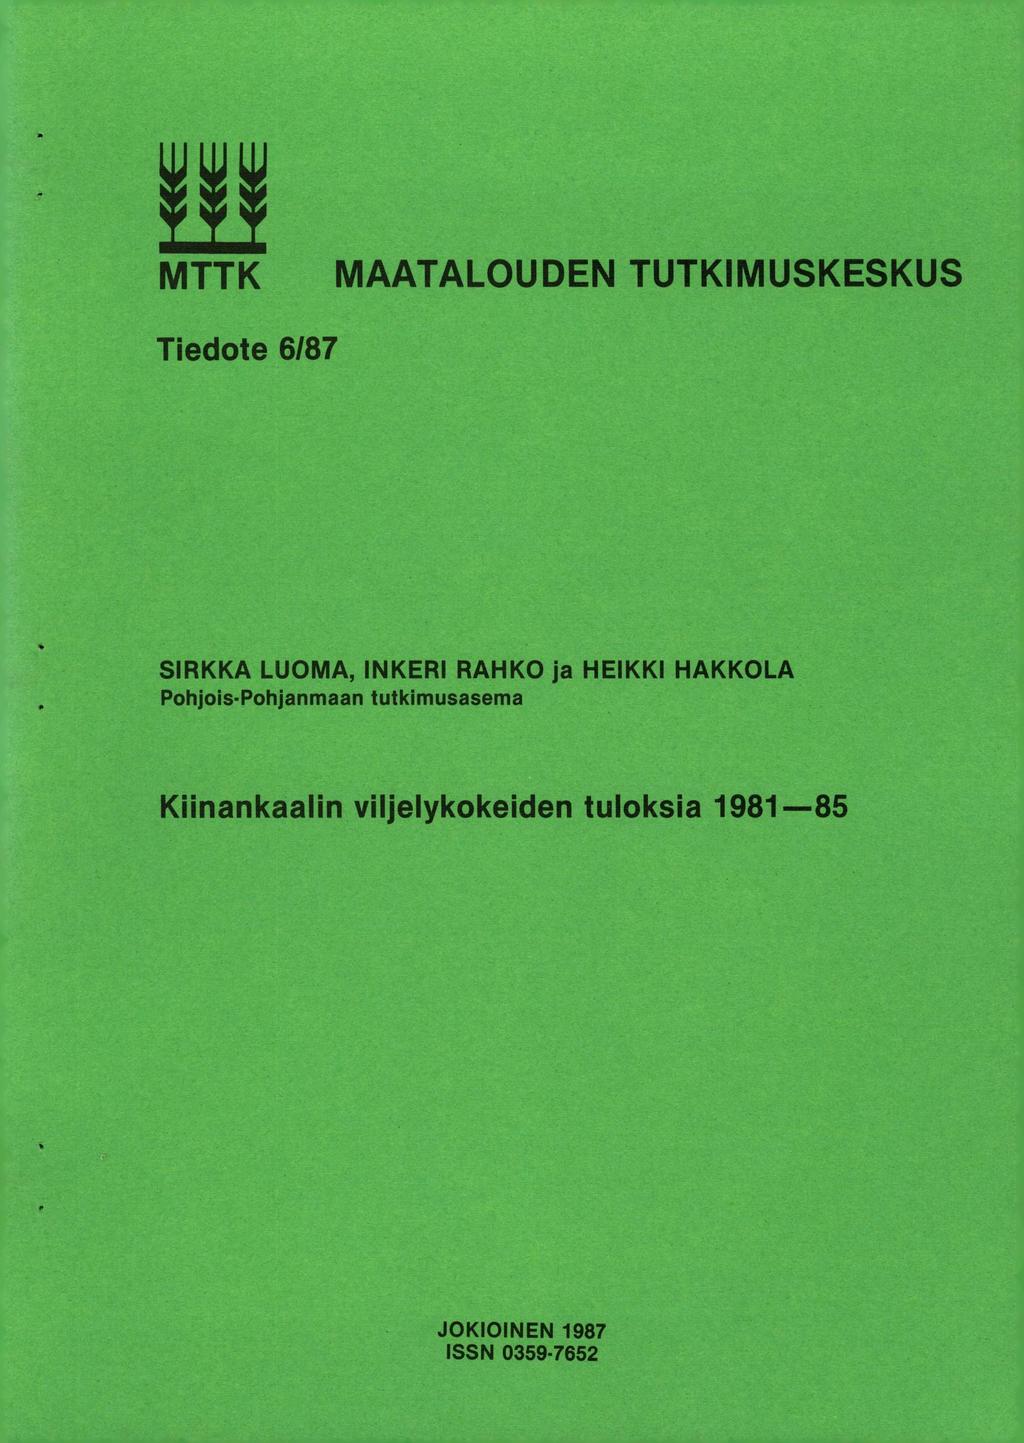 MTTK MAATALOUDEN TUTKIMUSKESKUS Tiedote 6/87 SIRKKA LUOMA, INKERI RAHKO ja HEIKKI HAKKOLA